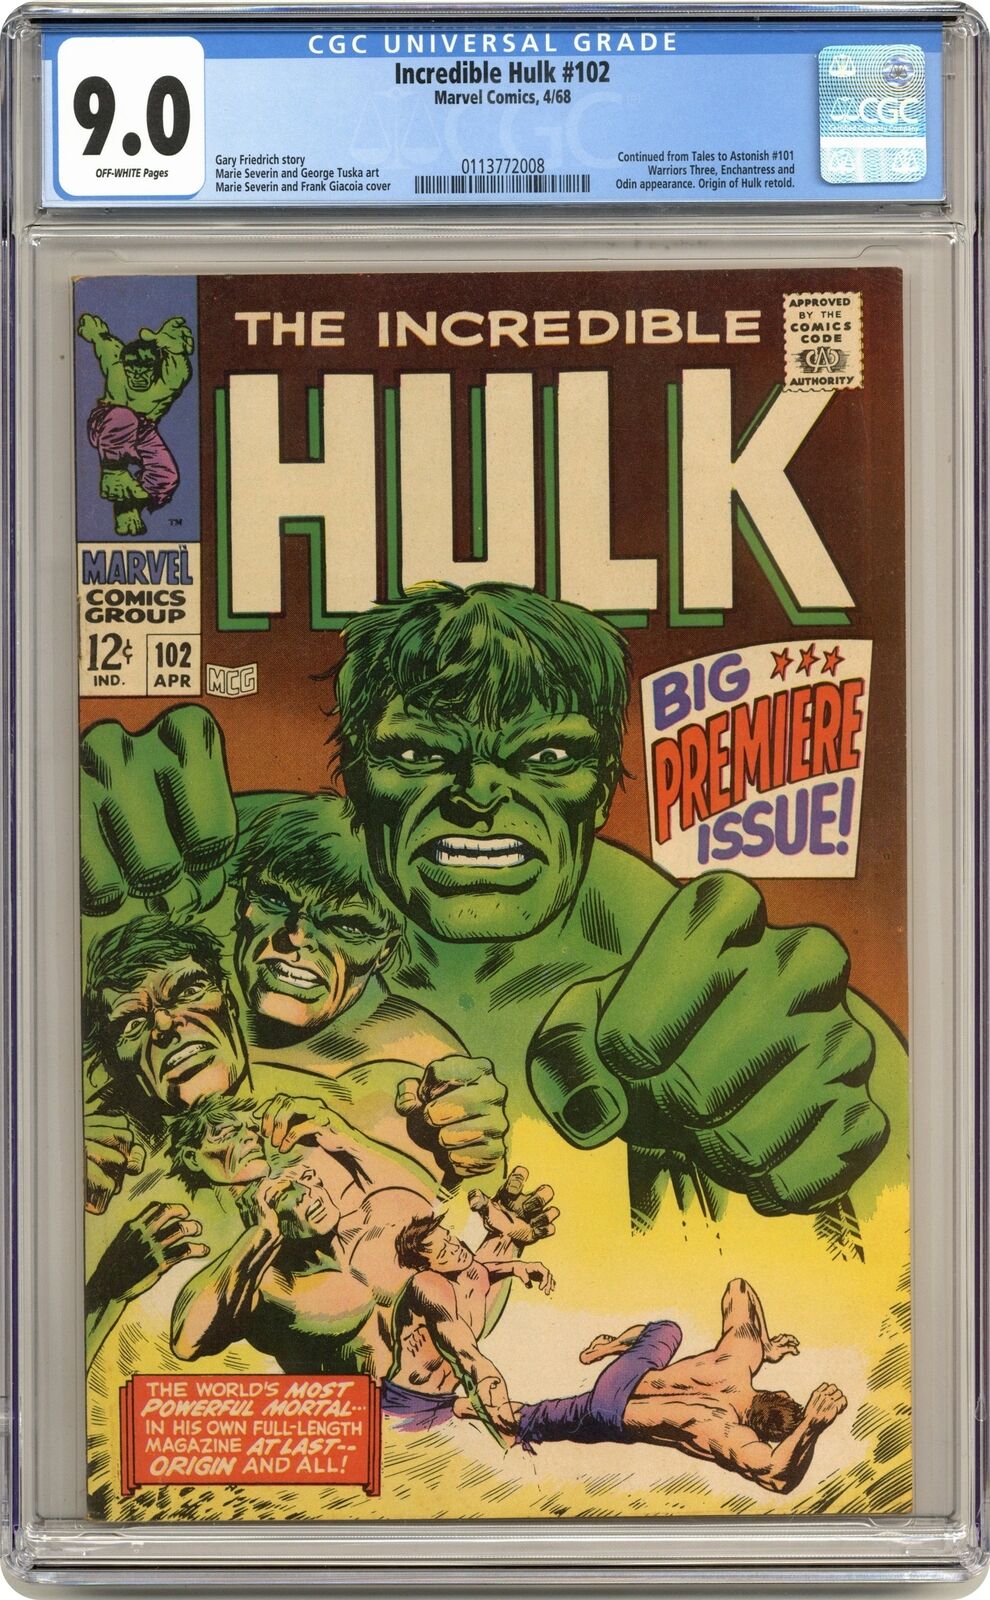 Incredible Hulk #102 CGC 9.0 1968 0113772008